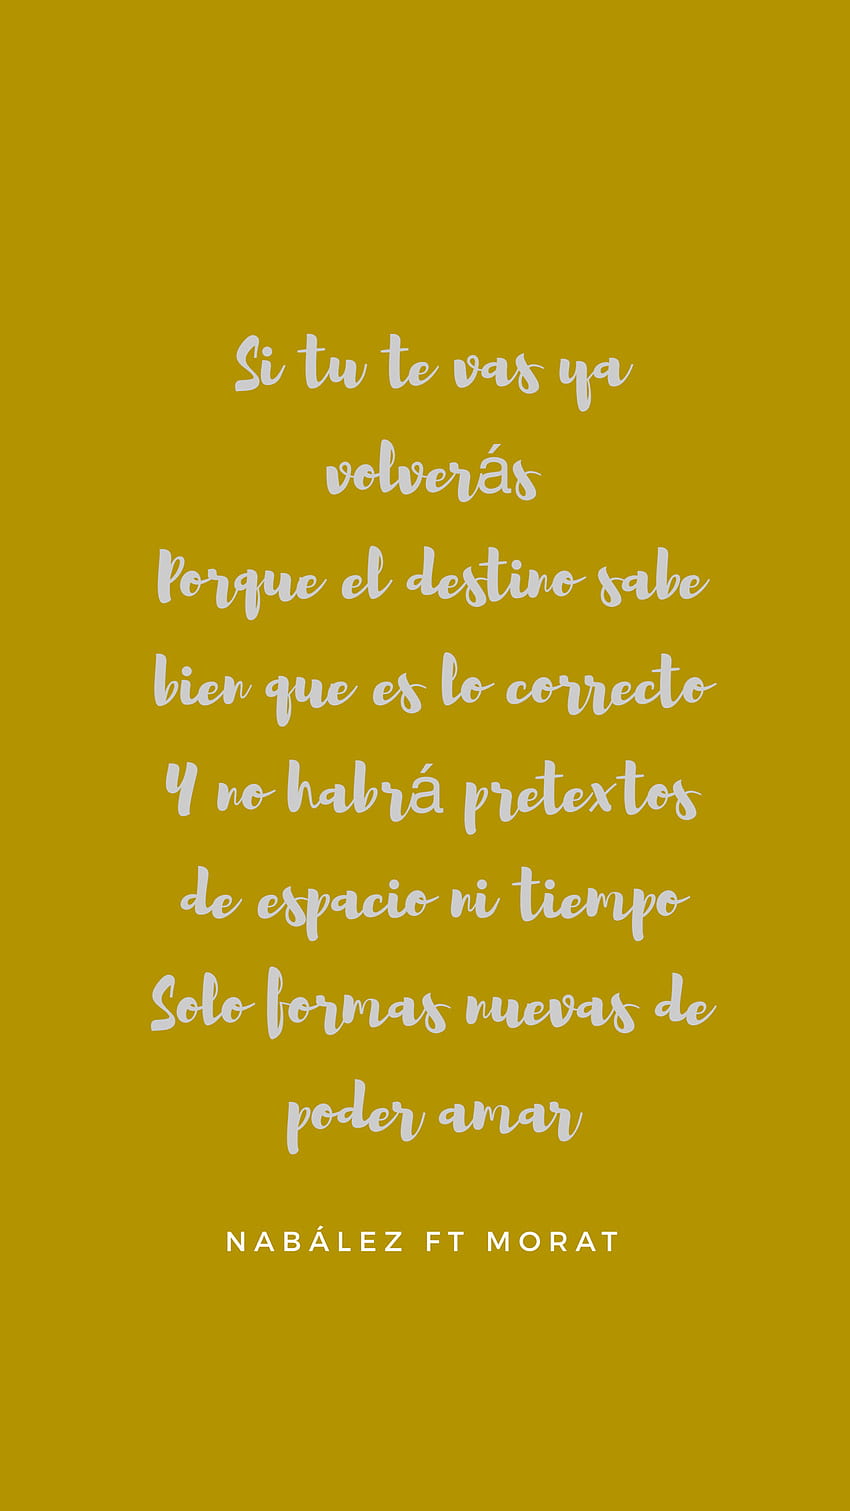 beautiful quotes tumblr in spanish